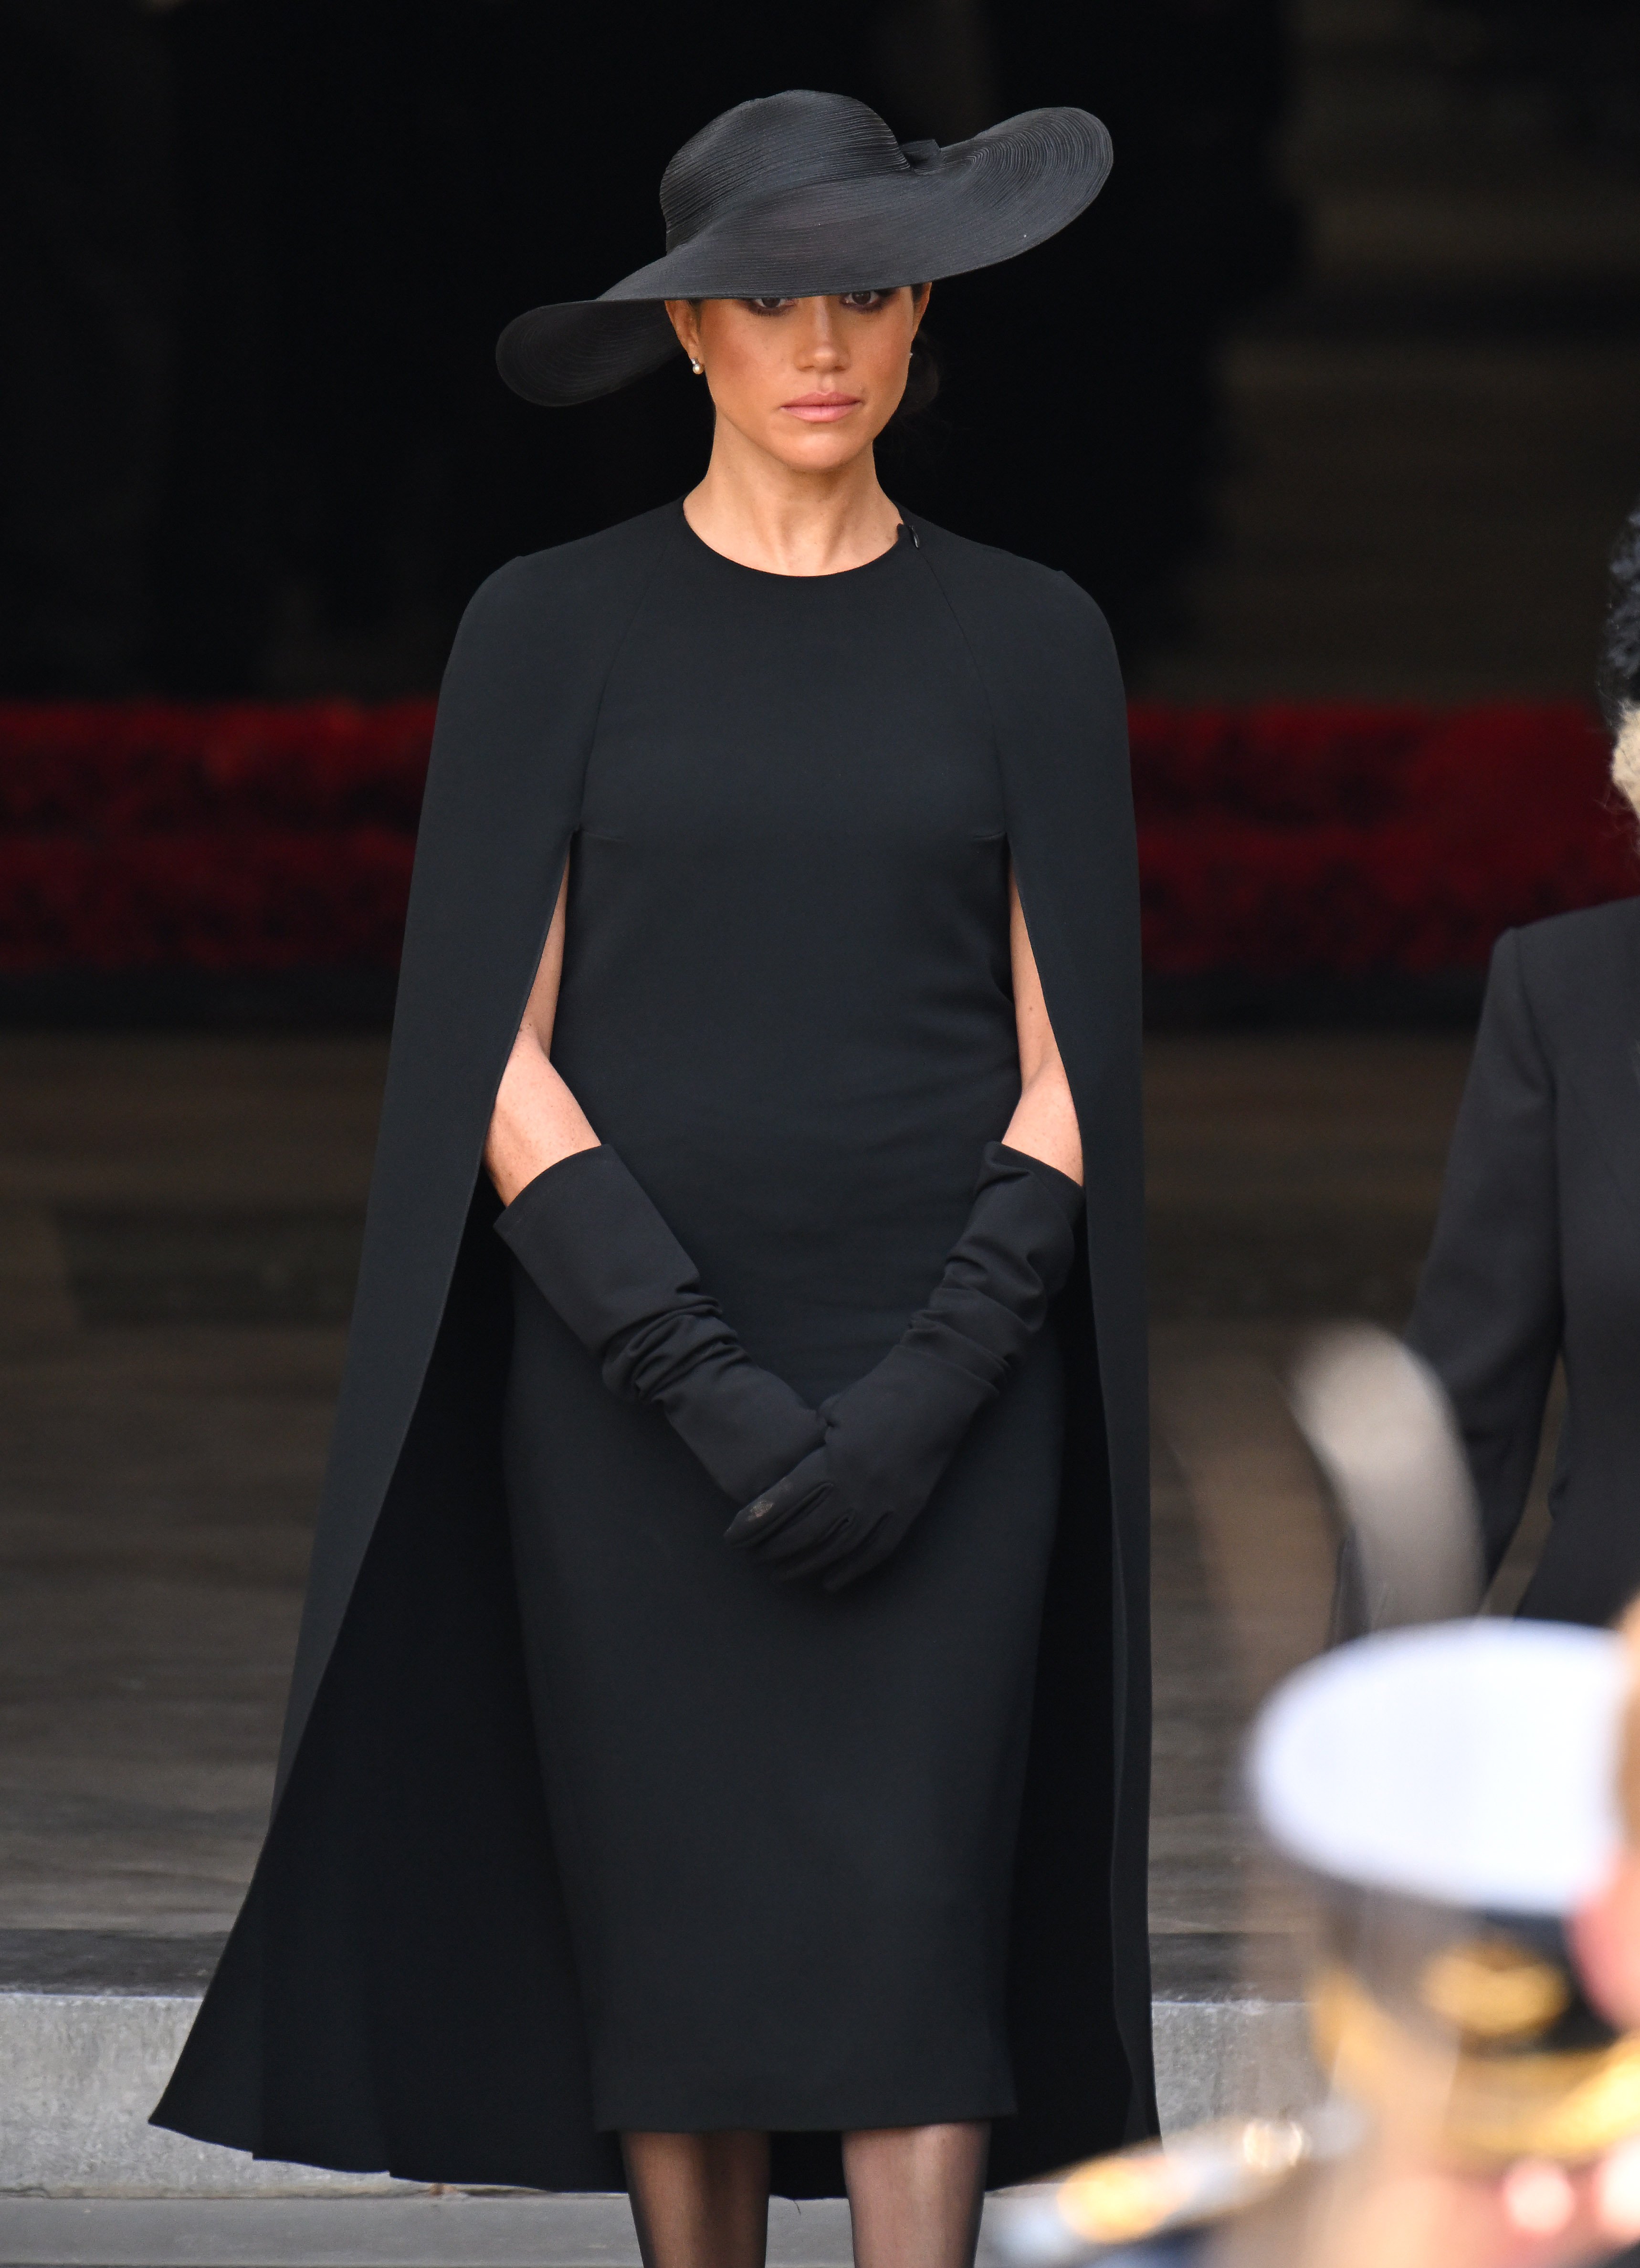 Meghan, Herzogin von Sussex, während des Staatsbegräbnisses von Königin Elizabeth II. in der Westminster Abbey am 19. September 2022 in London, England | Quelle: Getty Images